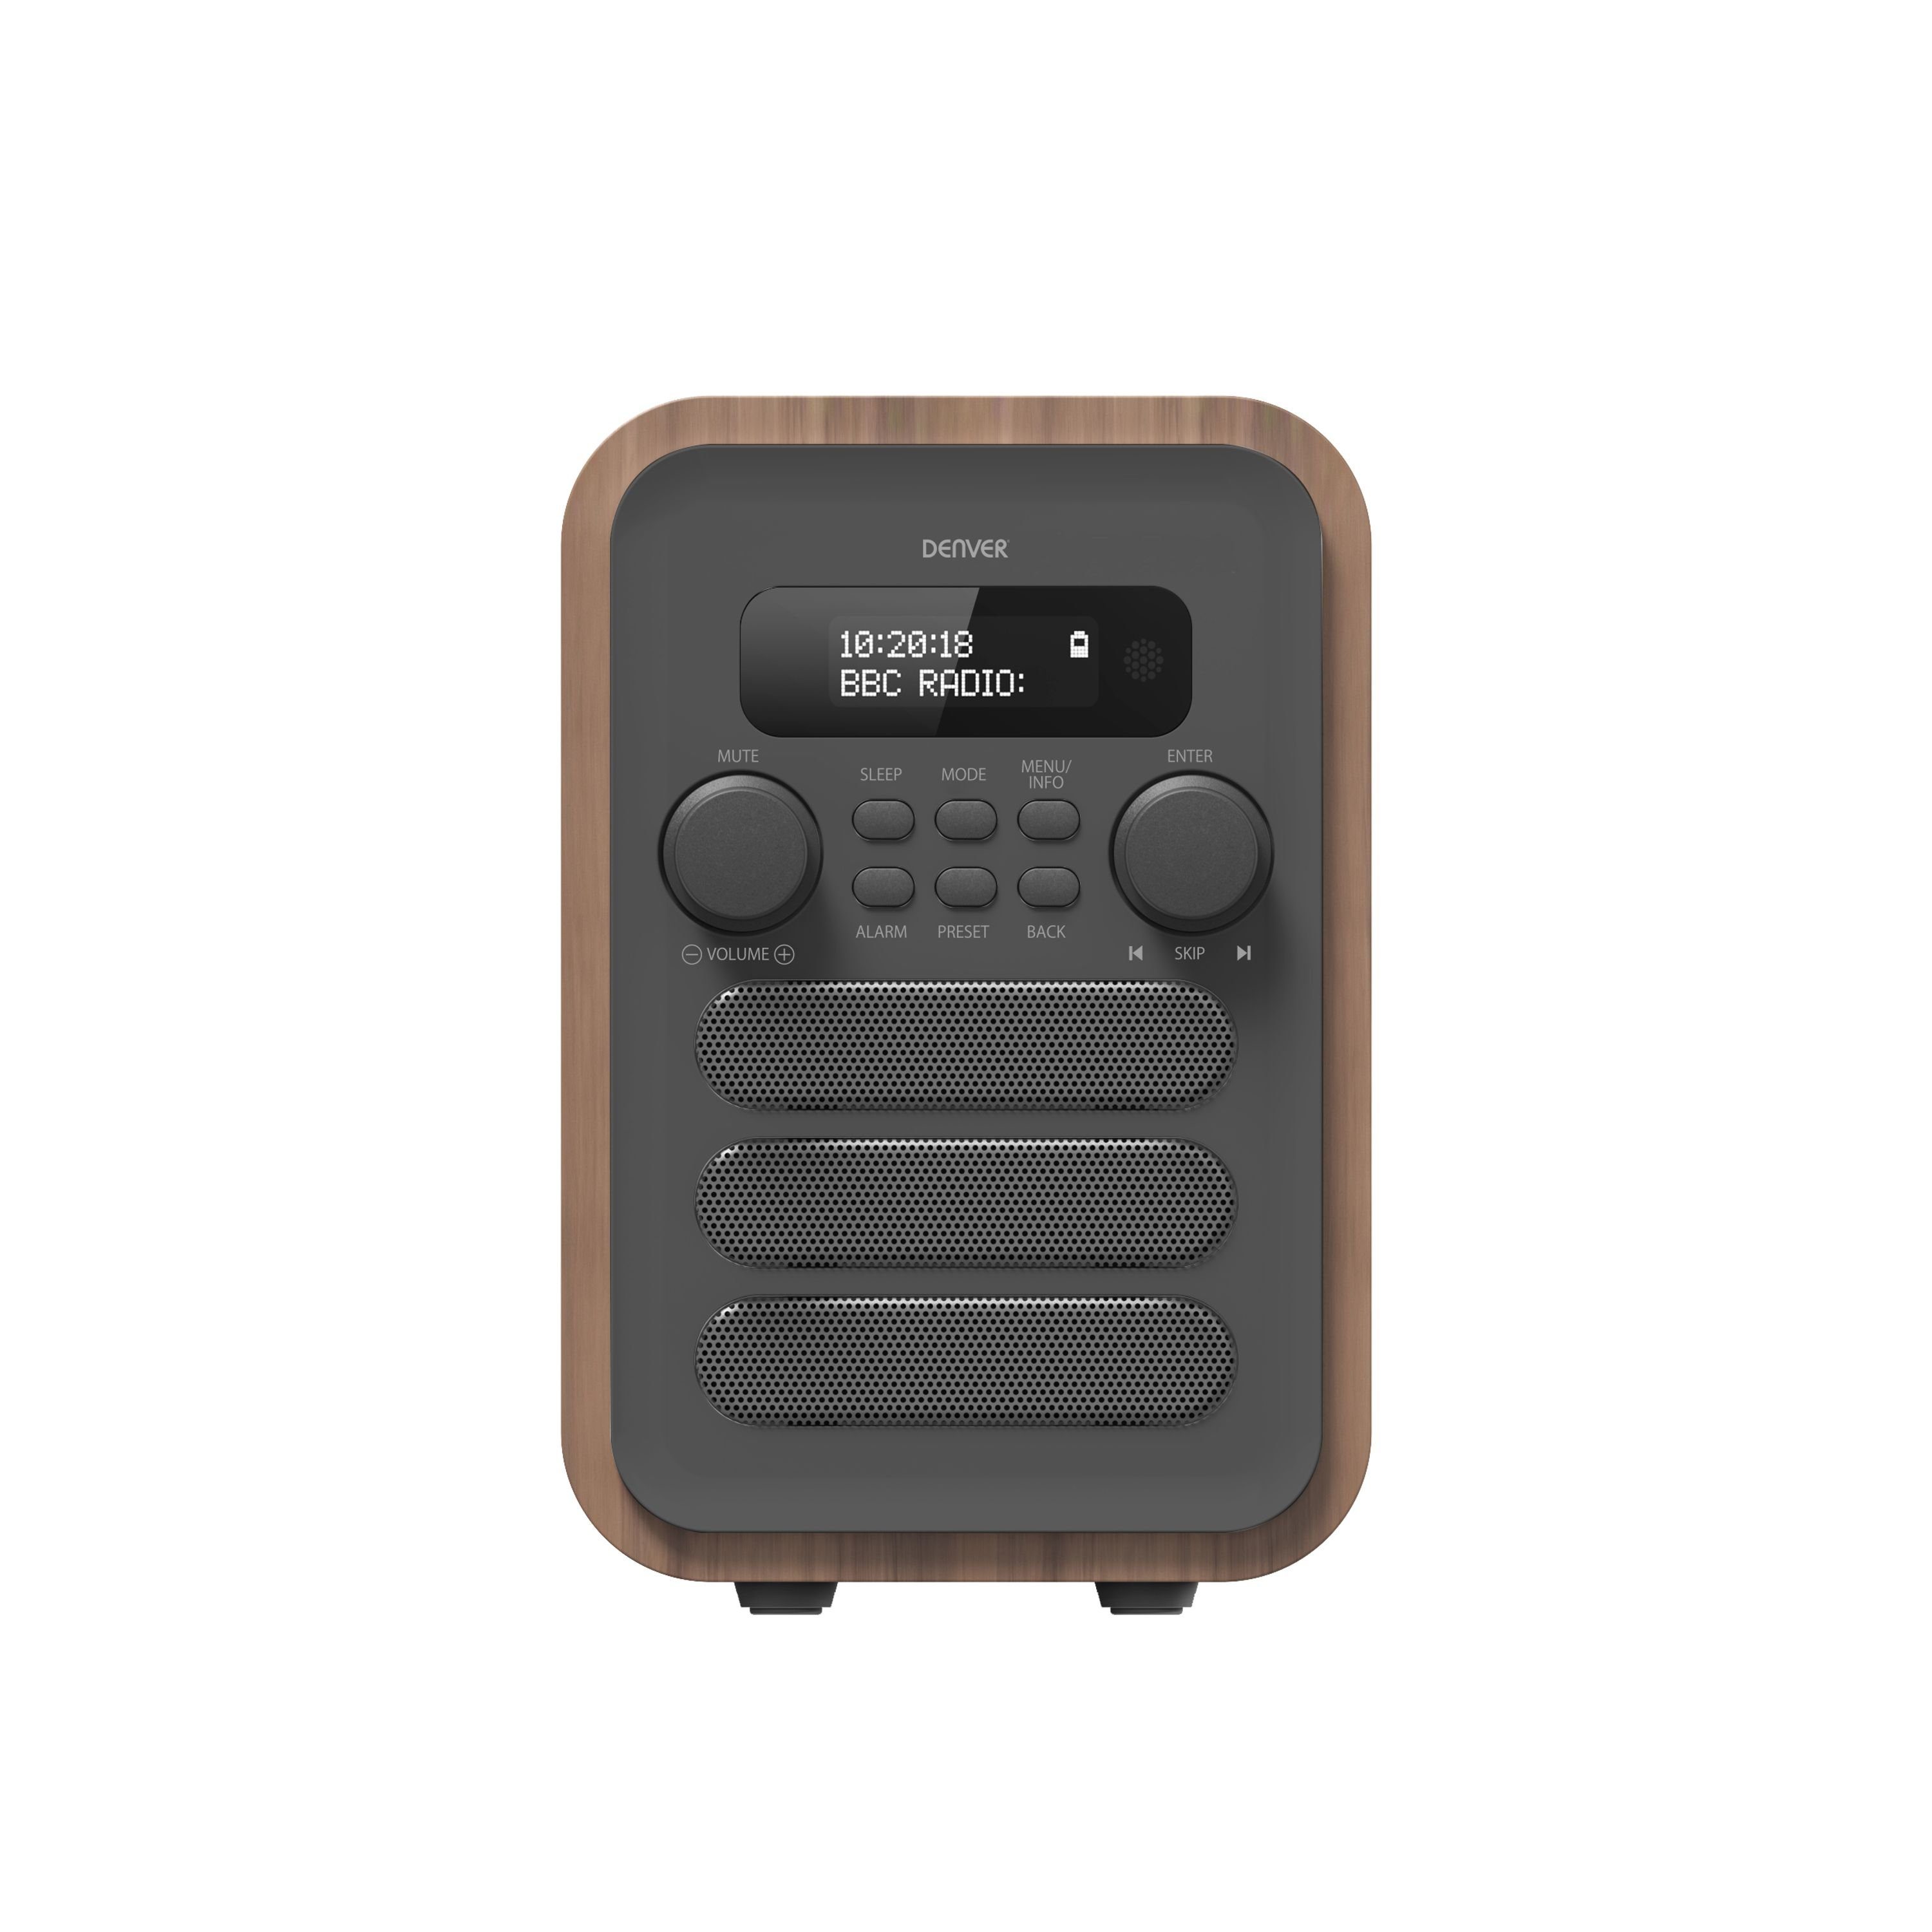 Denver Denver Radio DAB-48 grey Radio (Digitalradio (DAB), 2,5 W),  Audiovolumen von 2,5 W RMS, 3,5mm Kopfhöreranschluss und Teleskopantenne